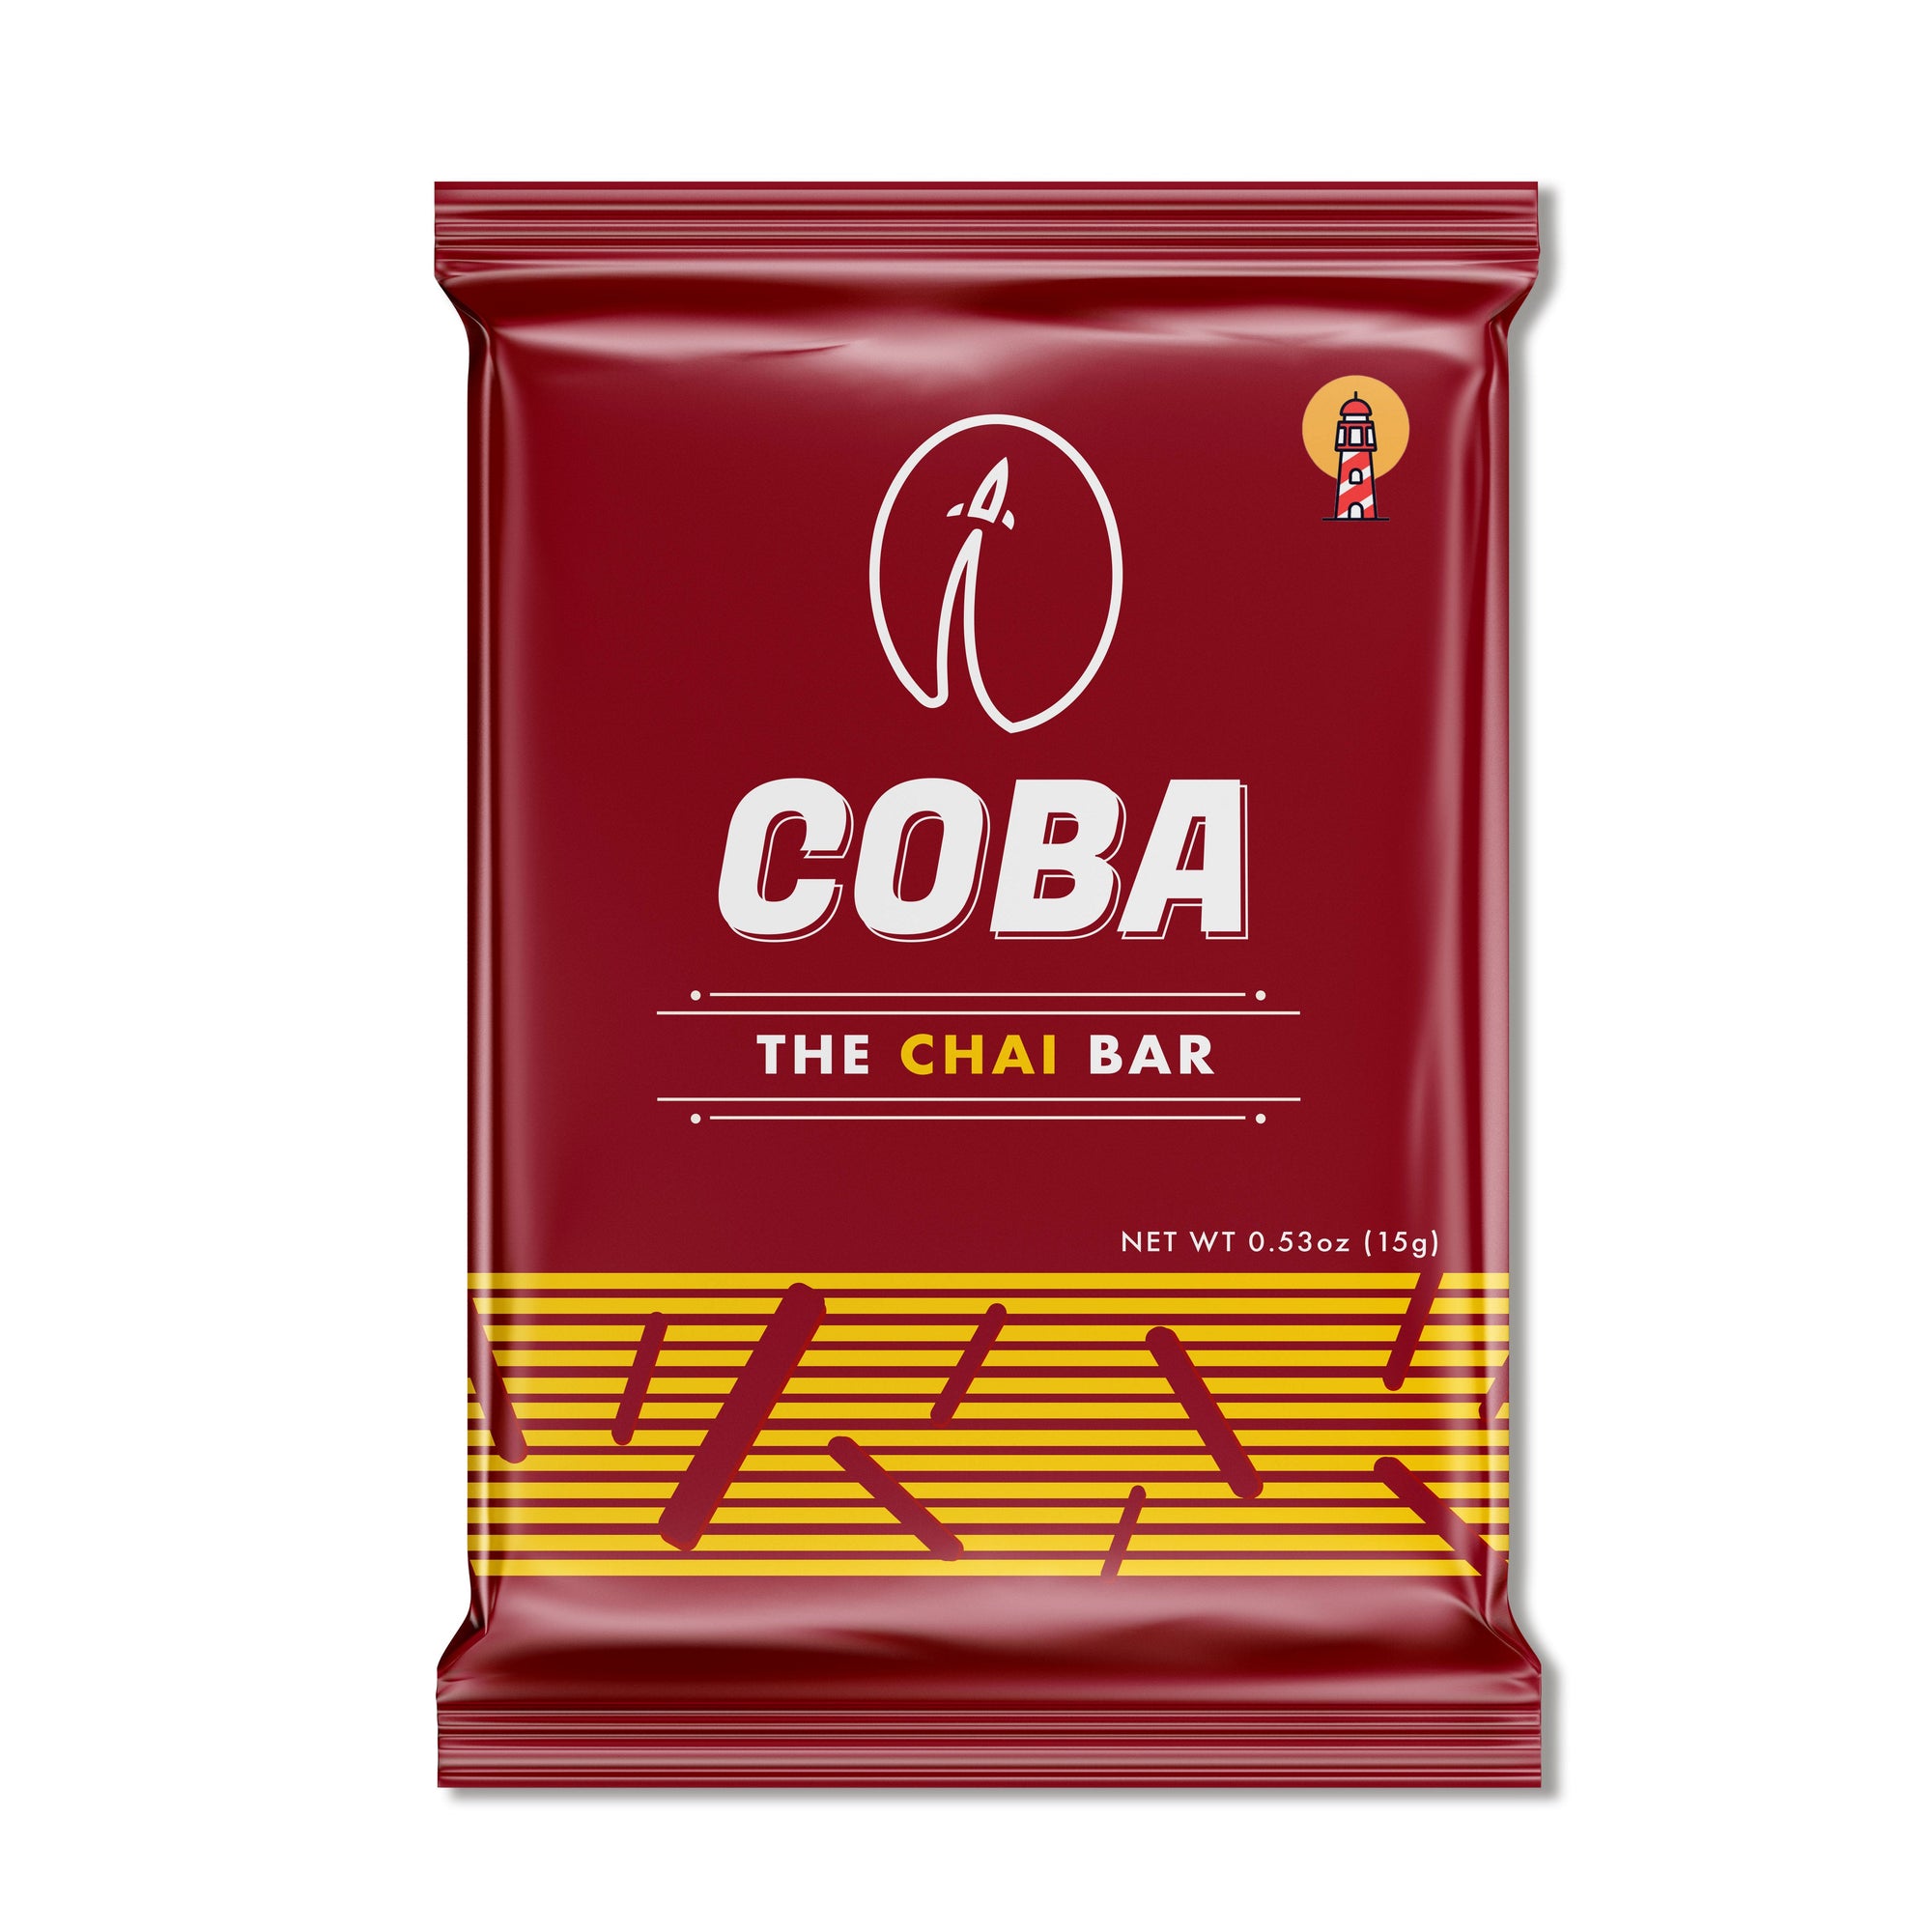 COBA, The Chai Bar